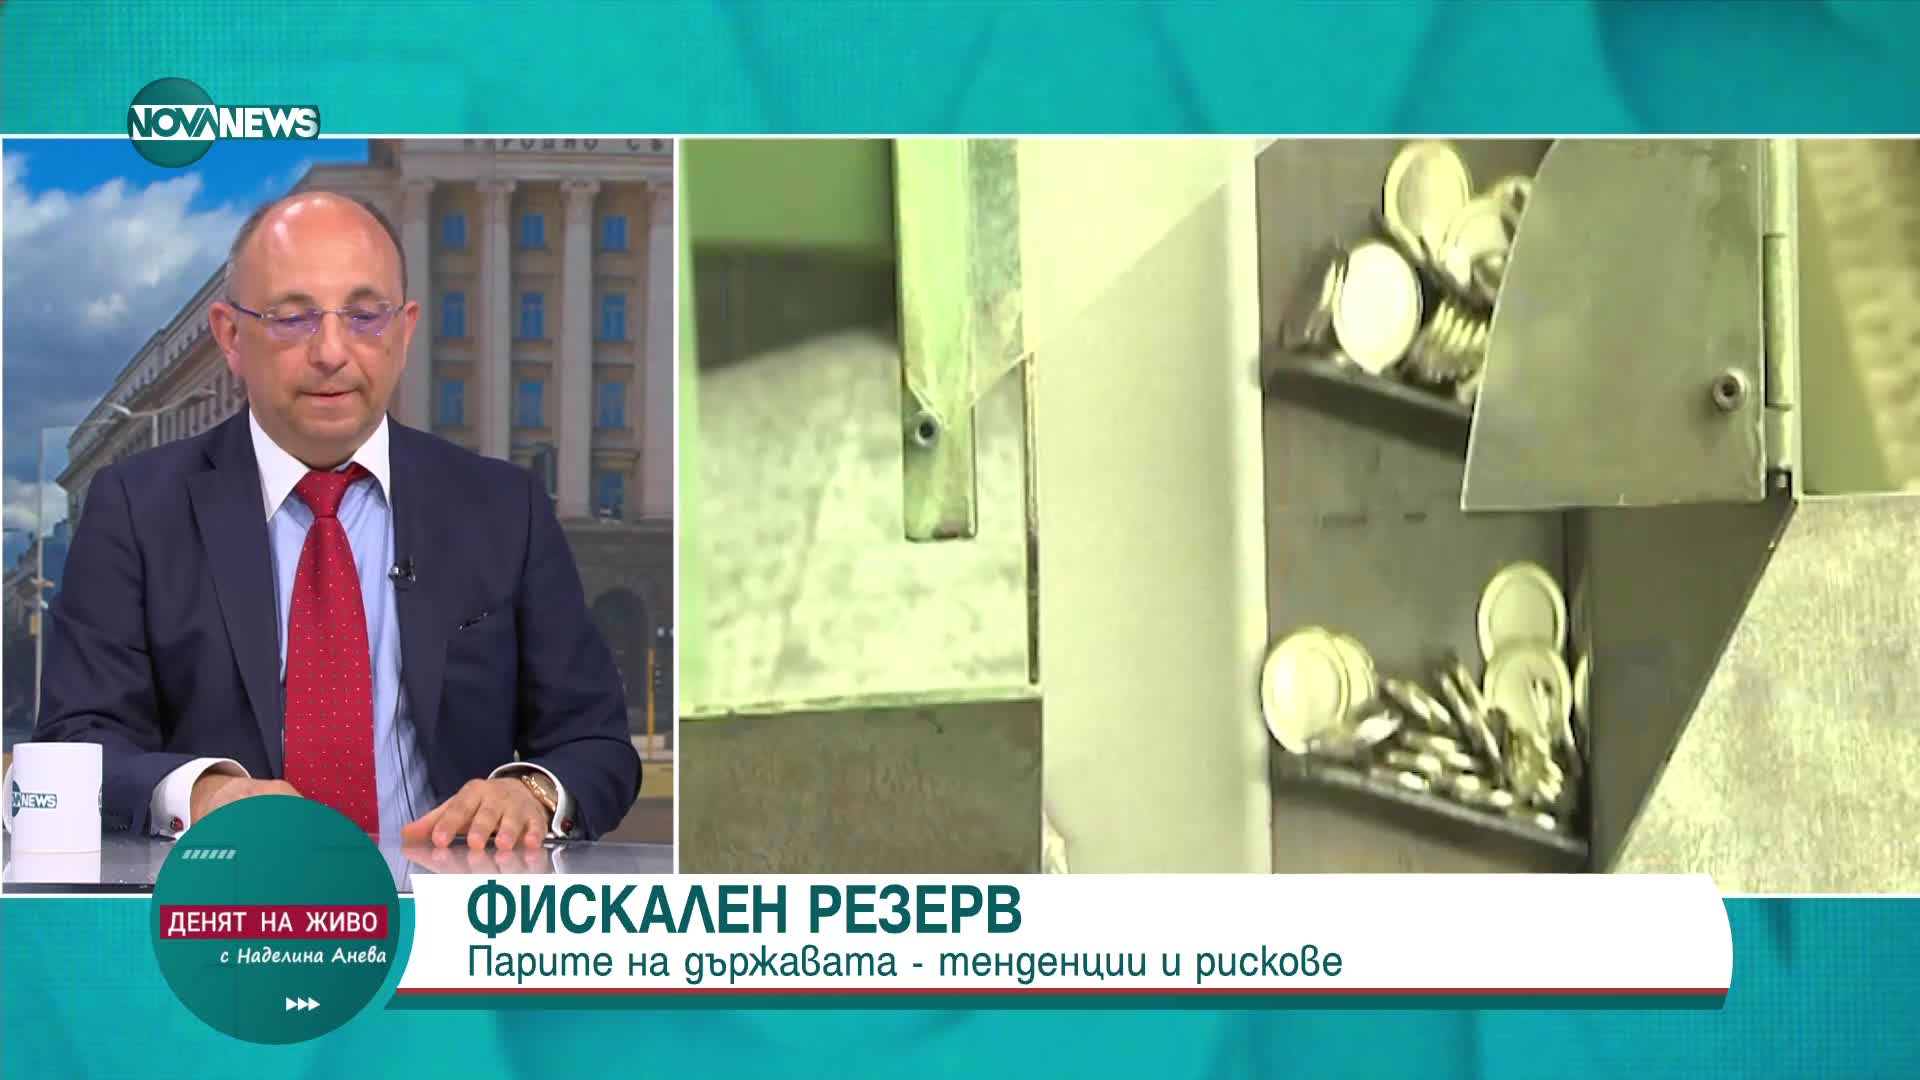 Василев: Политиките на правителствата през последните три години бяха проинфлационни